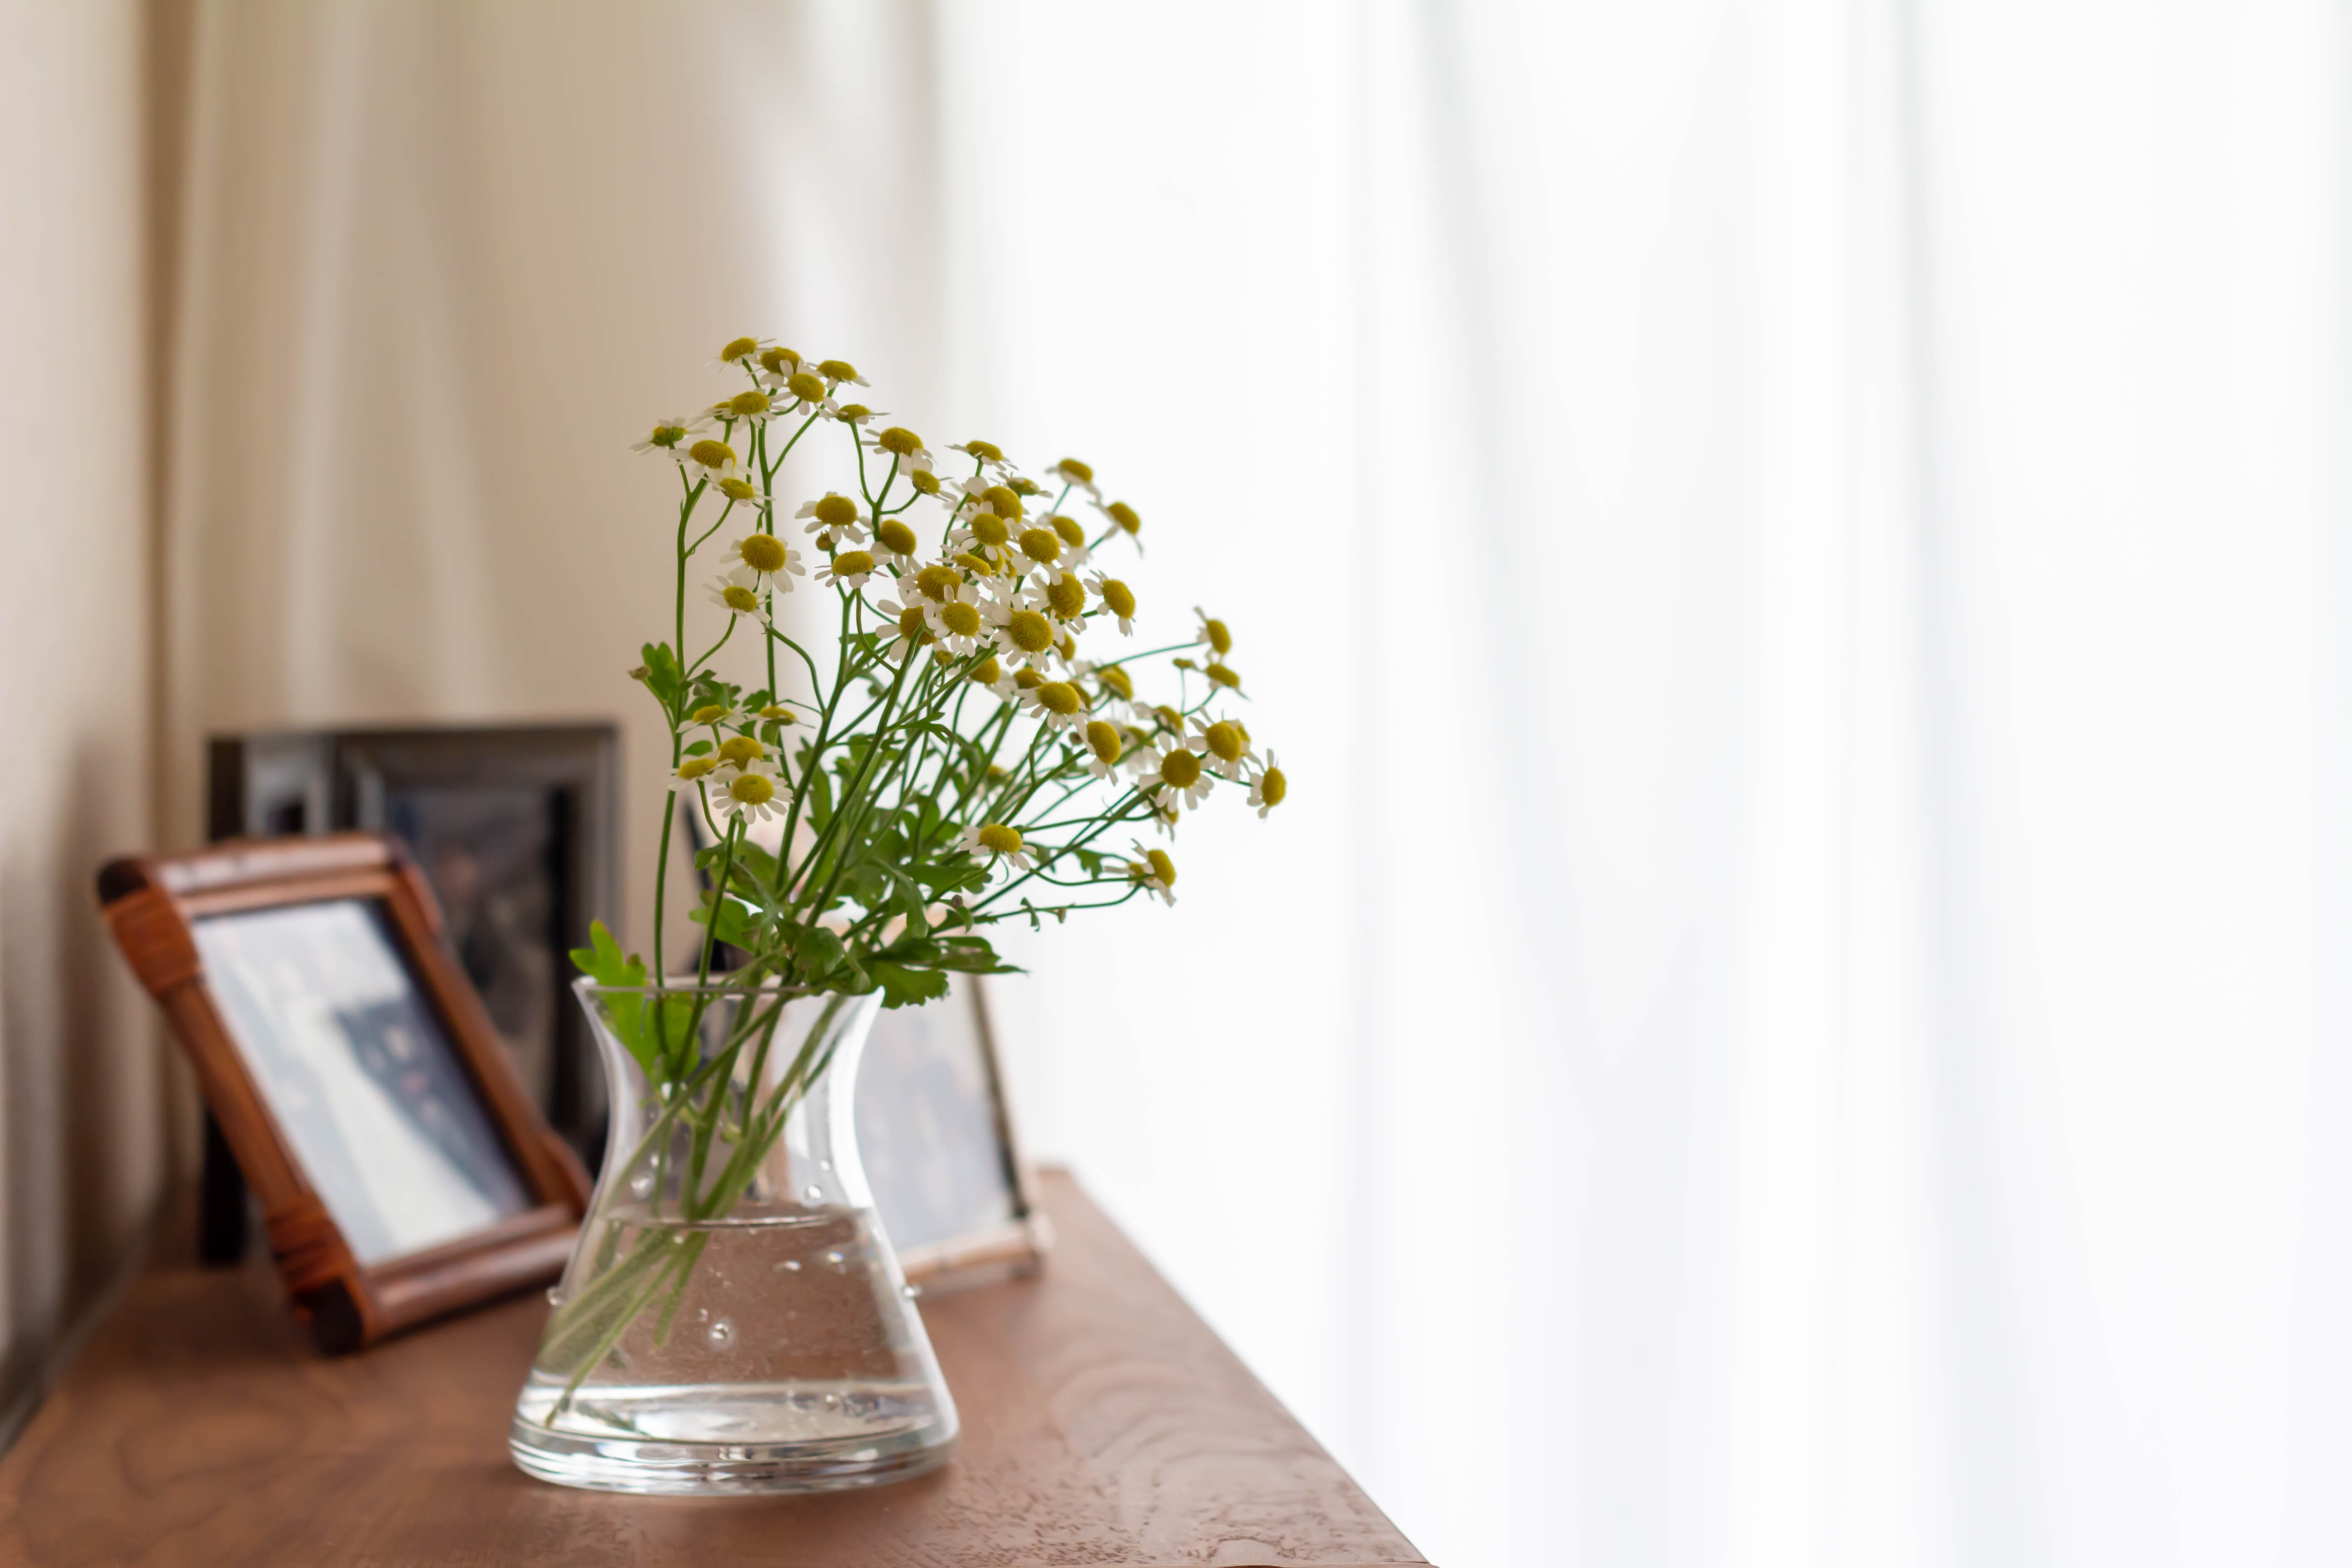 Flores y marcos de fotos bañándose en la luz que brilla en el interior. | Fuente: Shutterstock